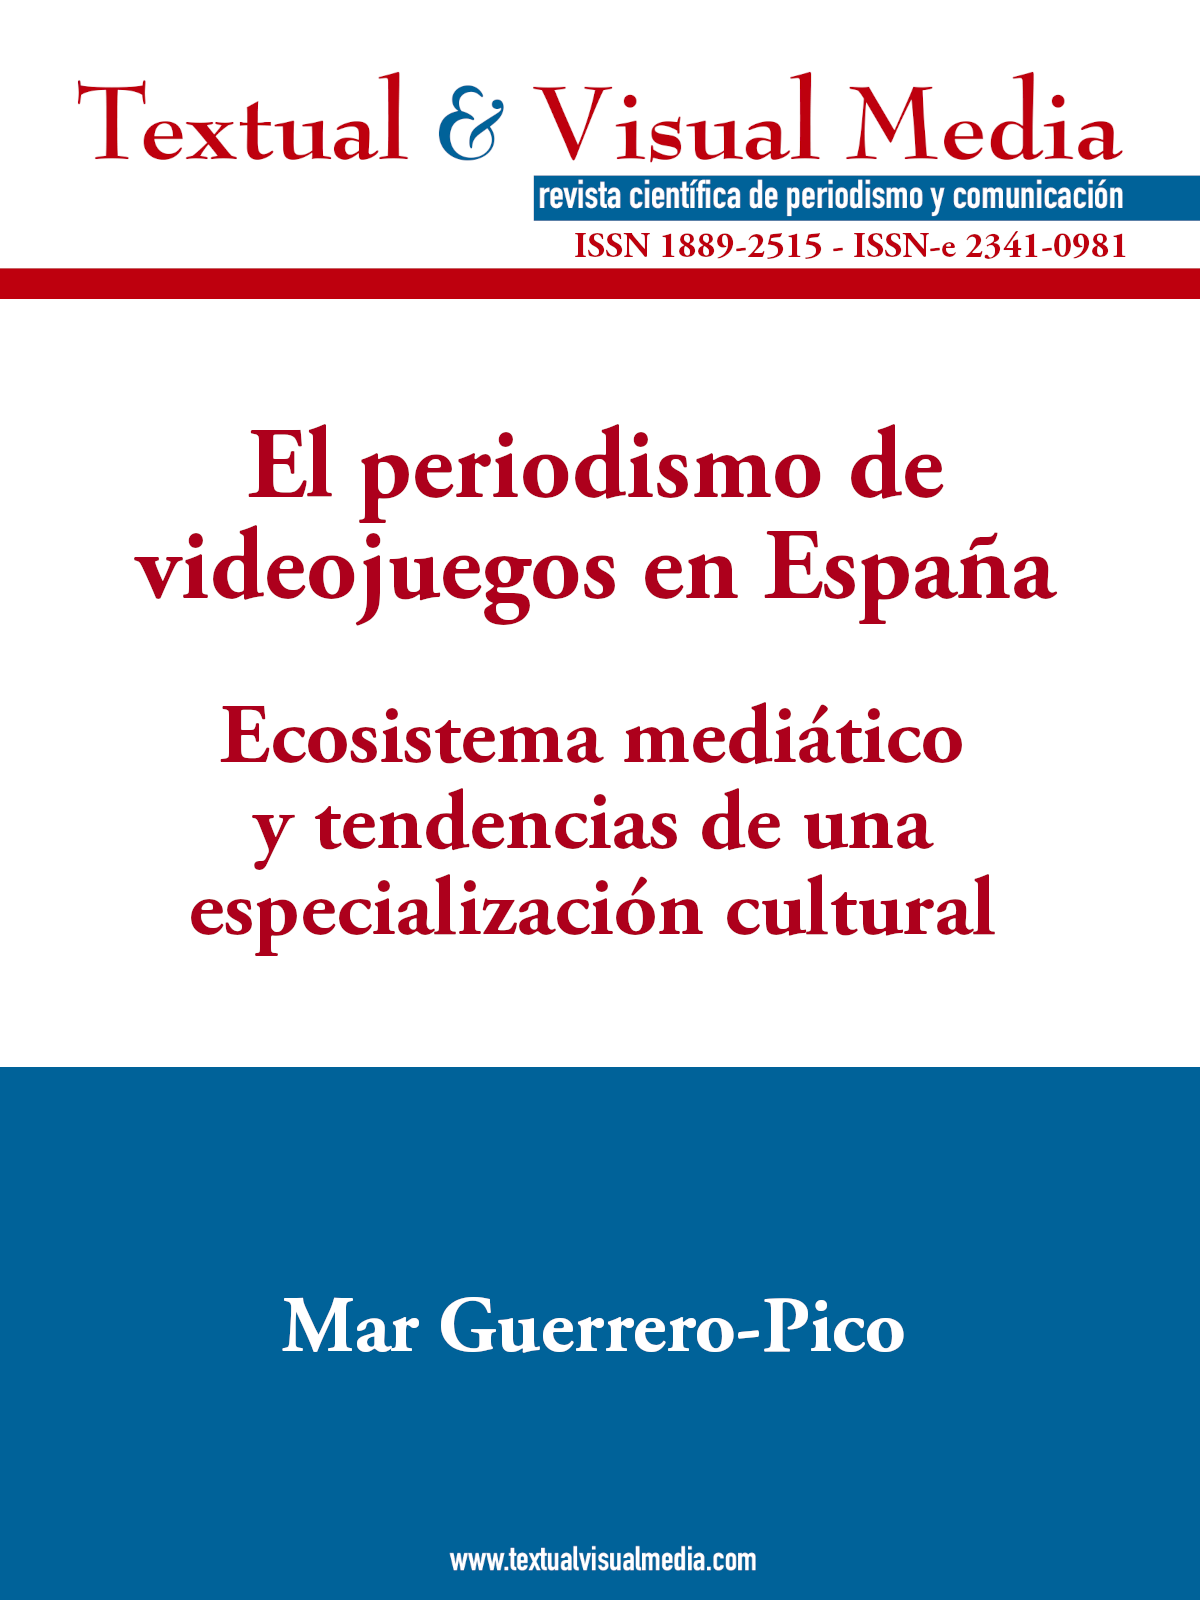 El periodismo de videojuegos en España. Ecosistema mediático y tendencias de una especialización cultural